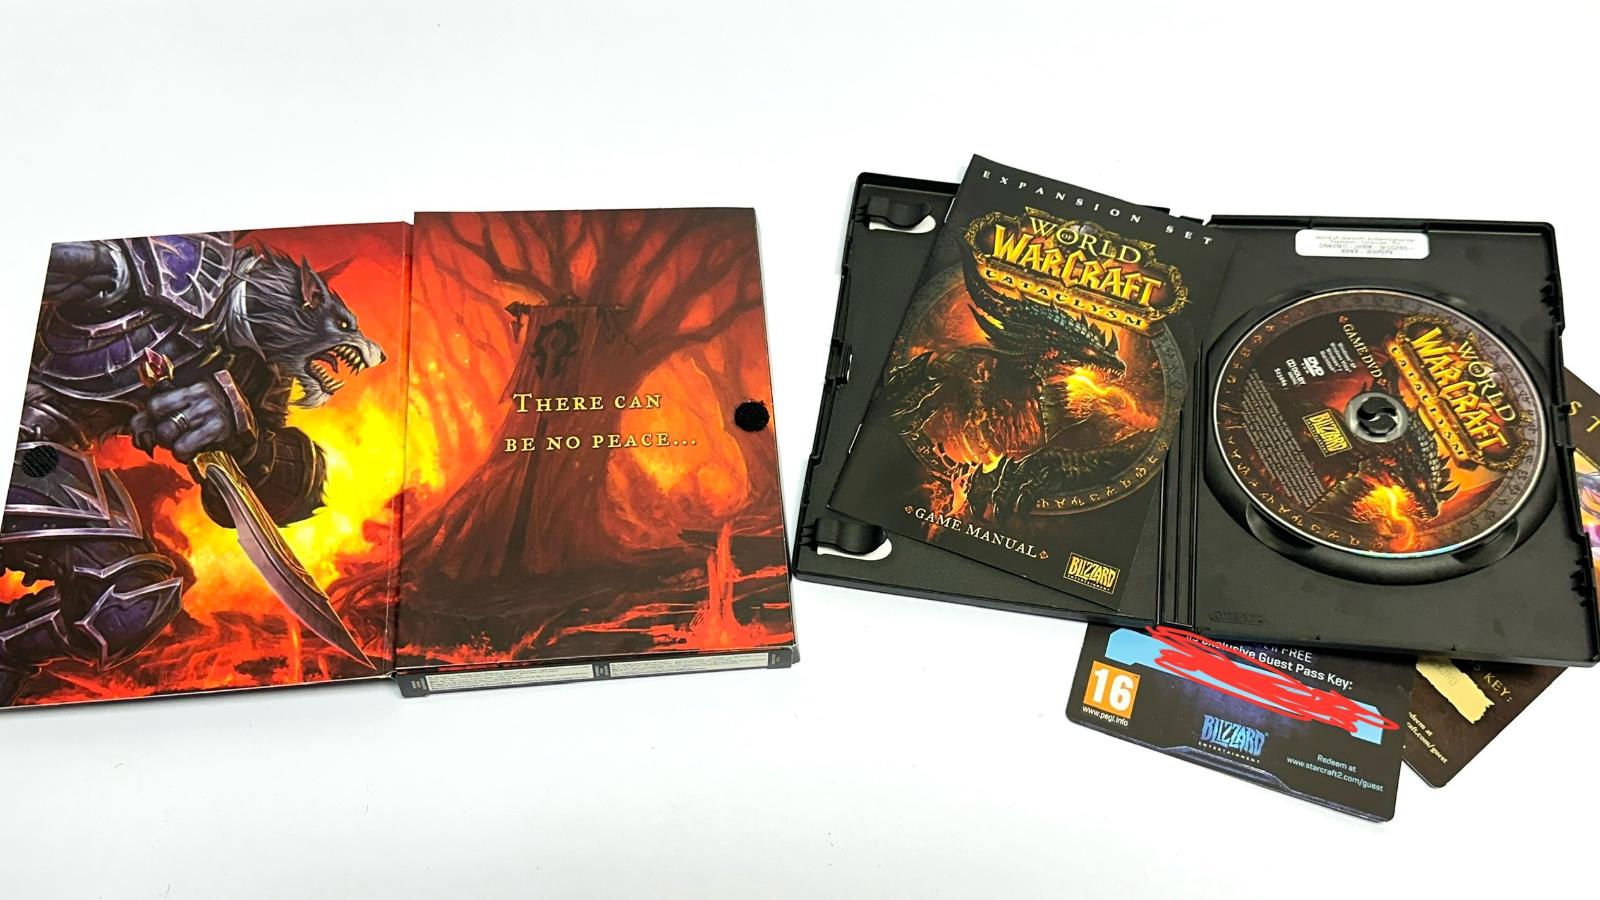 Krabicovka World of Warcraft Cataclysm kód použitý - Hry